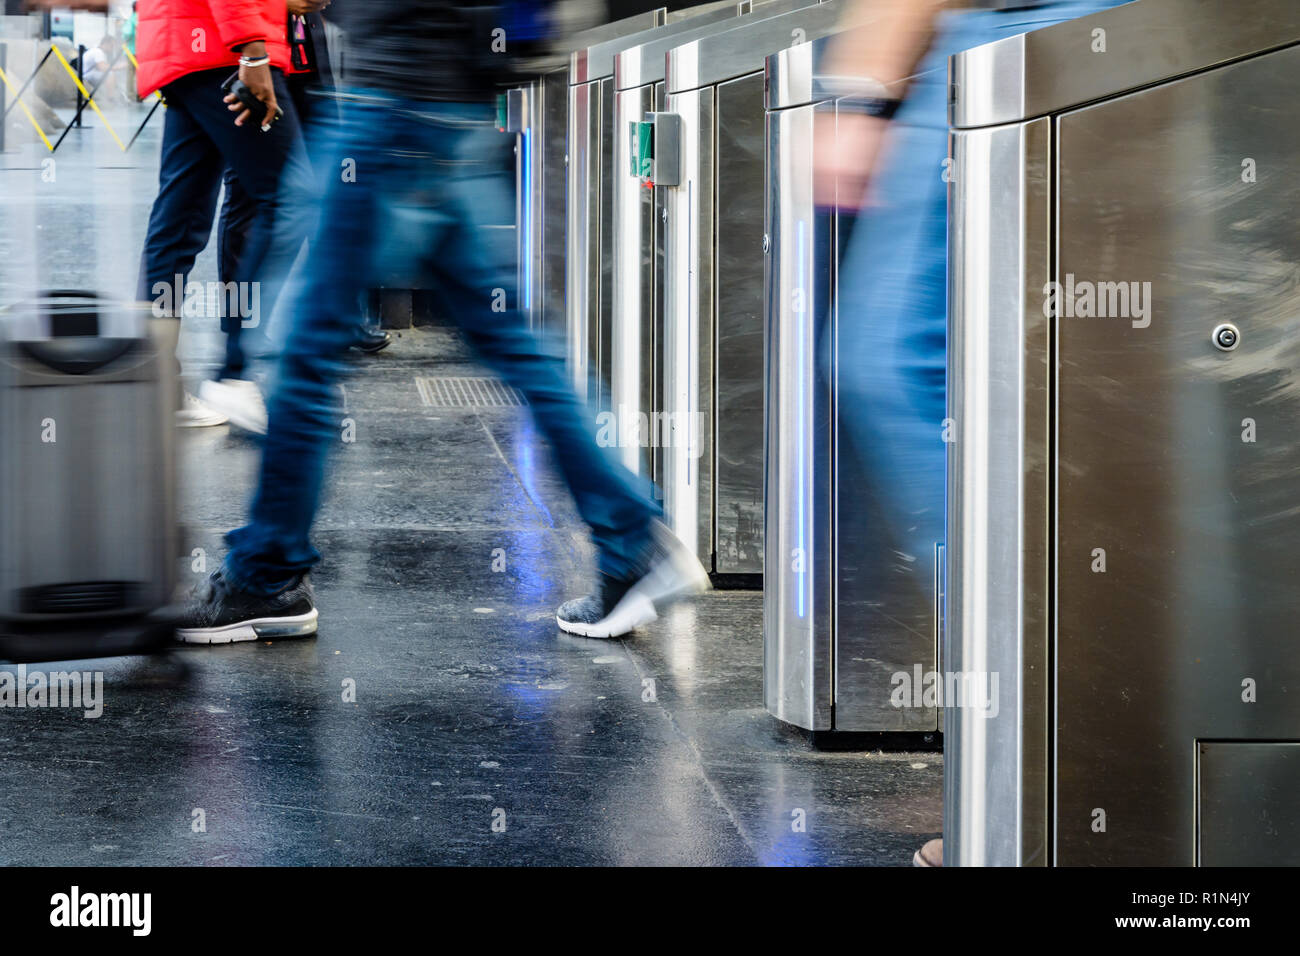 Vue latérale d'un homme avec une valise de matériel roulant en passant par des portes en acier inoxydable d'un ticket de transport public gare à Paris avec effet de flou. Banque D'Images